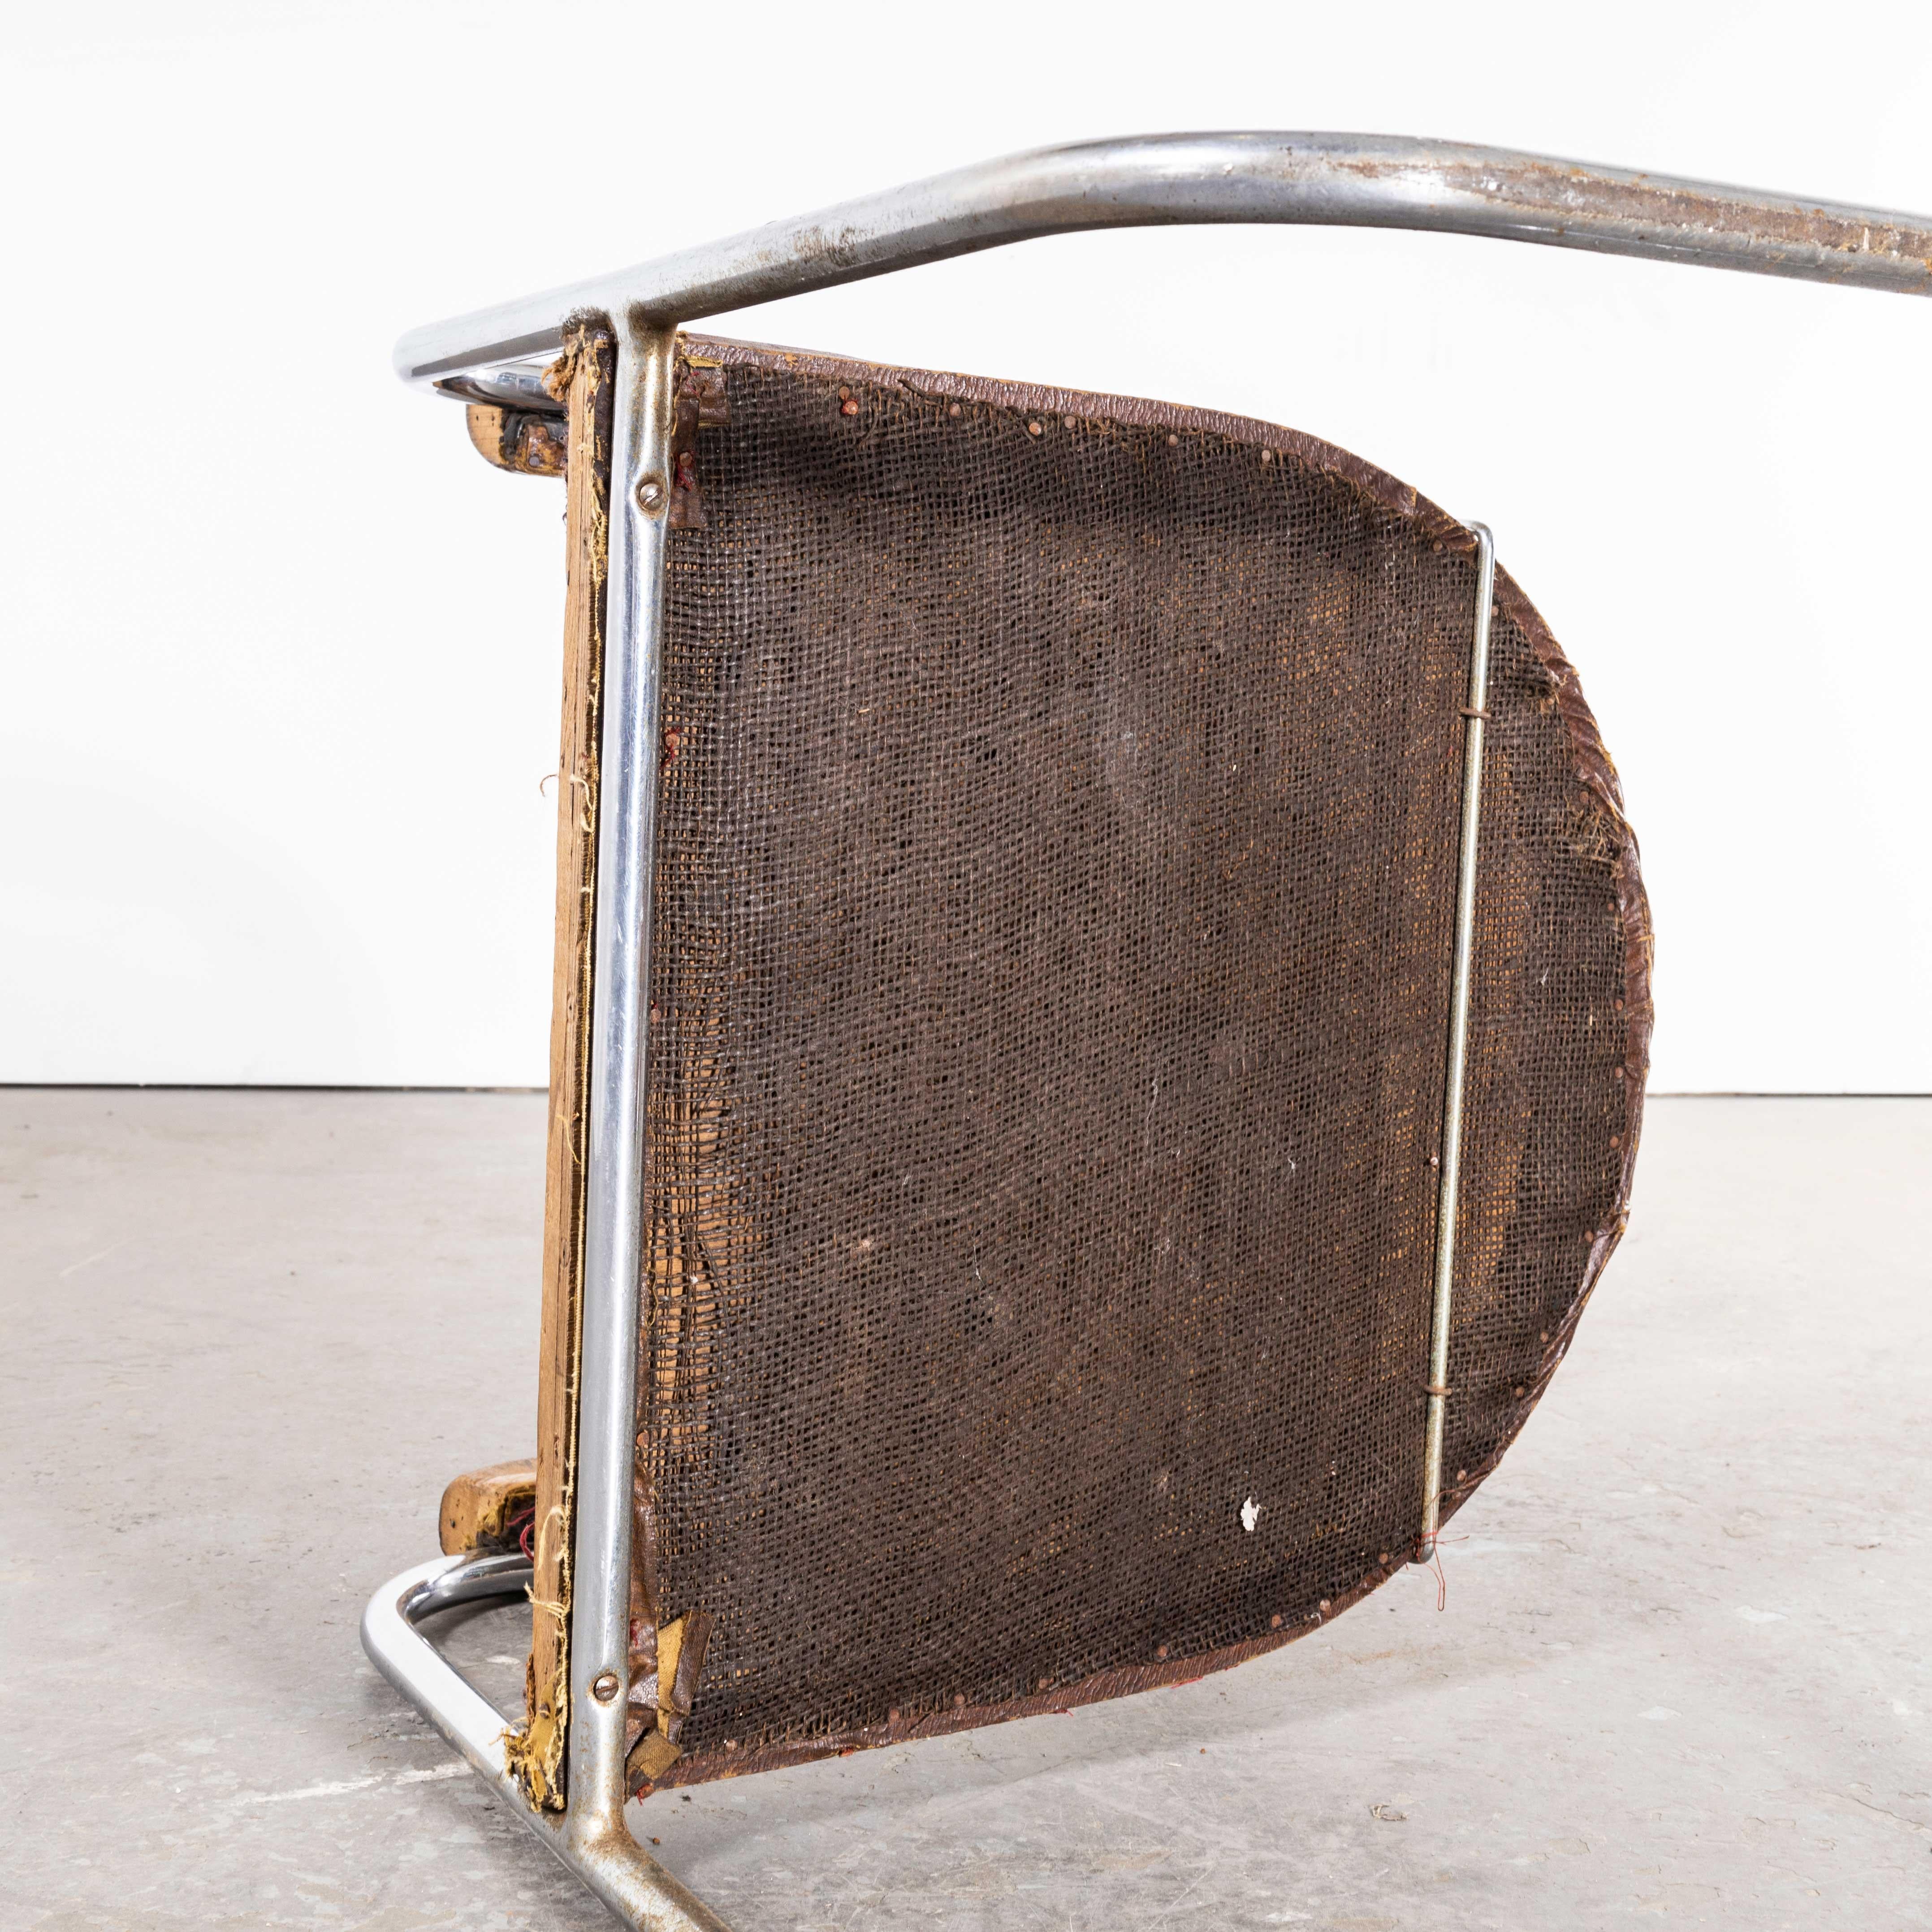 Chaise d'appoint en tube chromé d'origine Pel des années 1930 - cuir d'origine
Chaise d'appoint en chrome tubulaire d'origine Pel des années 1930 - cuir d'origine. Il s'agit d'une exceptionnelle et rare chaise de salle à manger en métal tubulaire